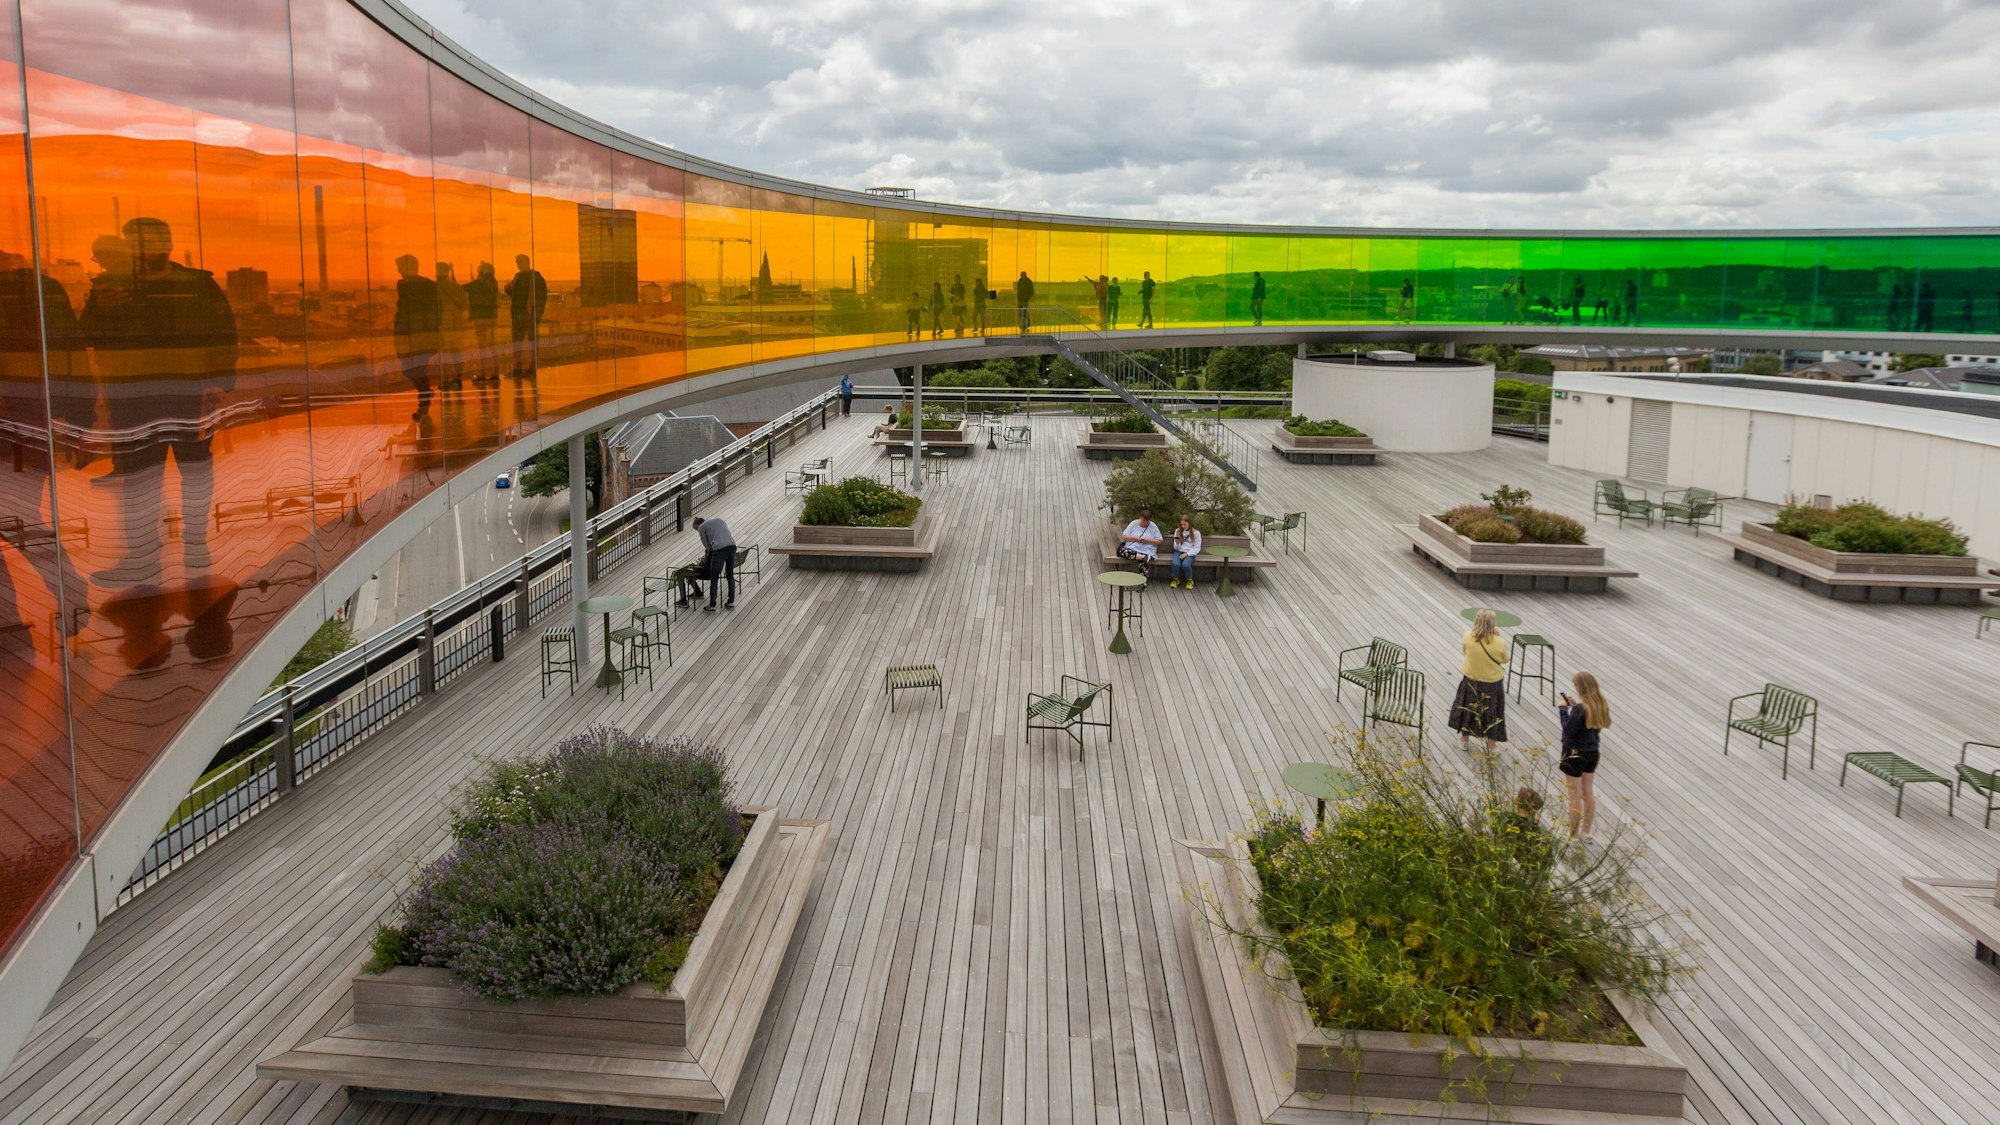 Blick auf den runden Skywalk „Your Rainbow Panorama“ des Künstlers Olafur Eliasson auf dem Dach des ARoS Kunstmuseums in Aarhus, hier im Juli 2020.